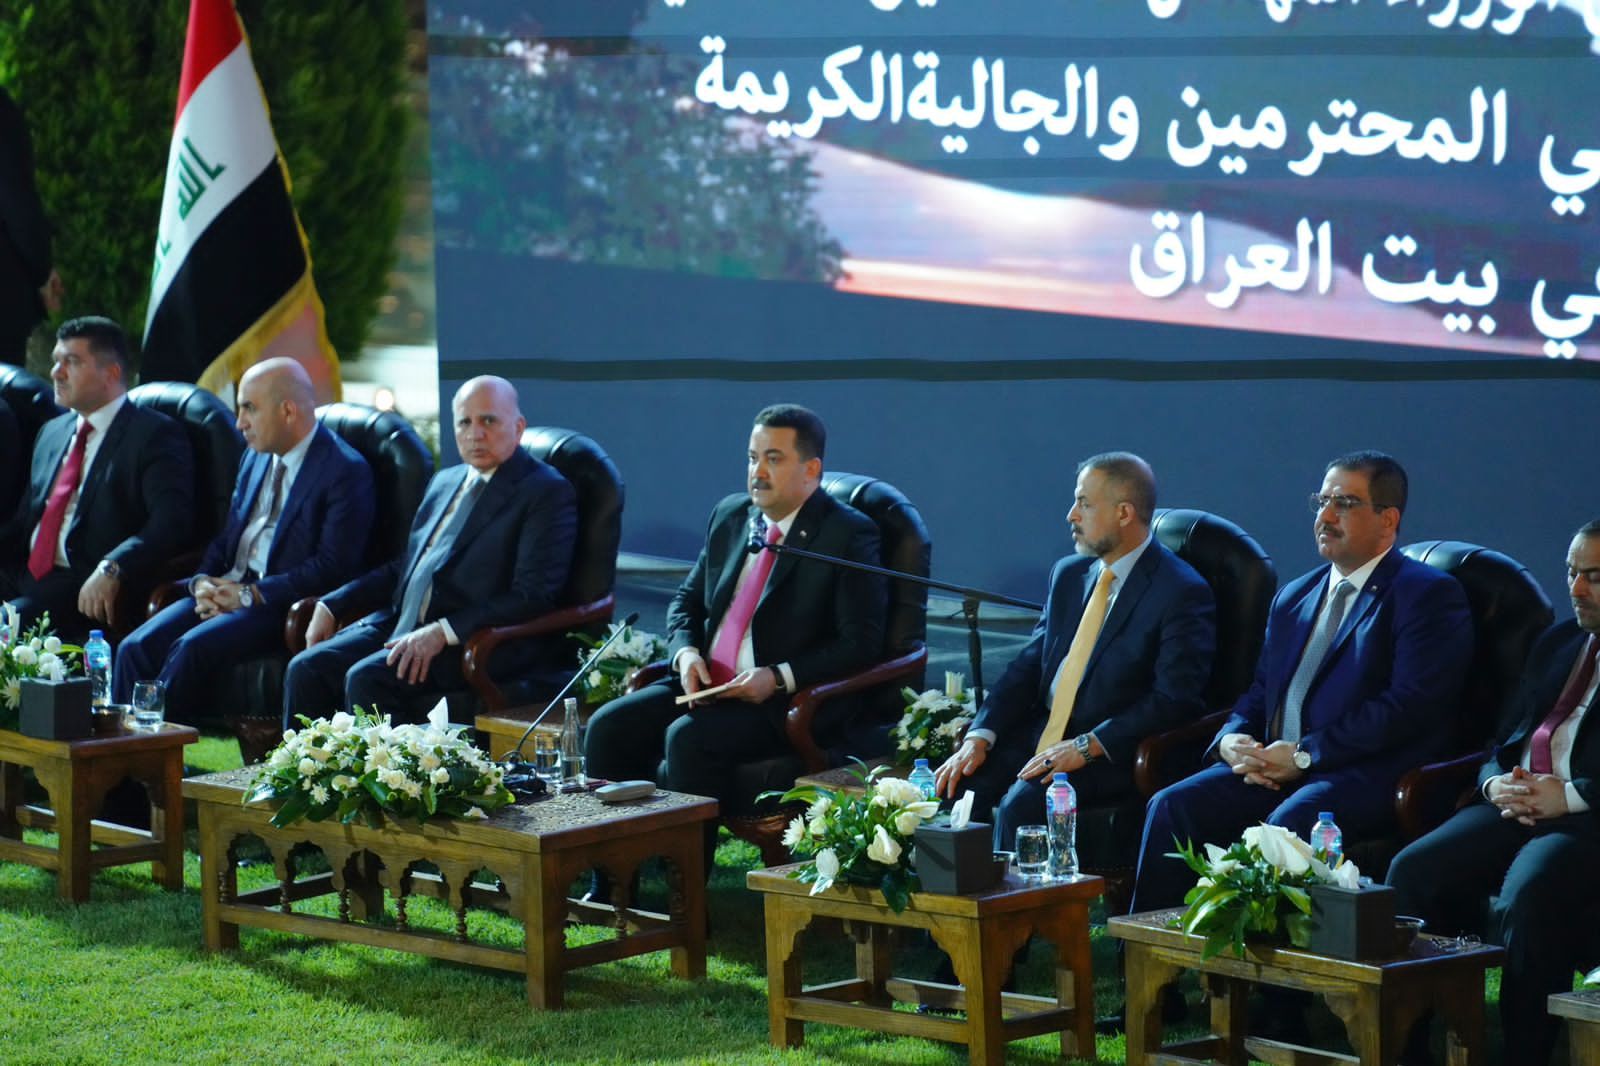 السوداني: علاقتنا مع مصر تستند إلى تاريخ مشترك